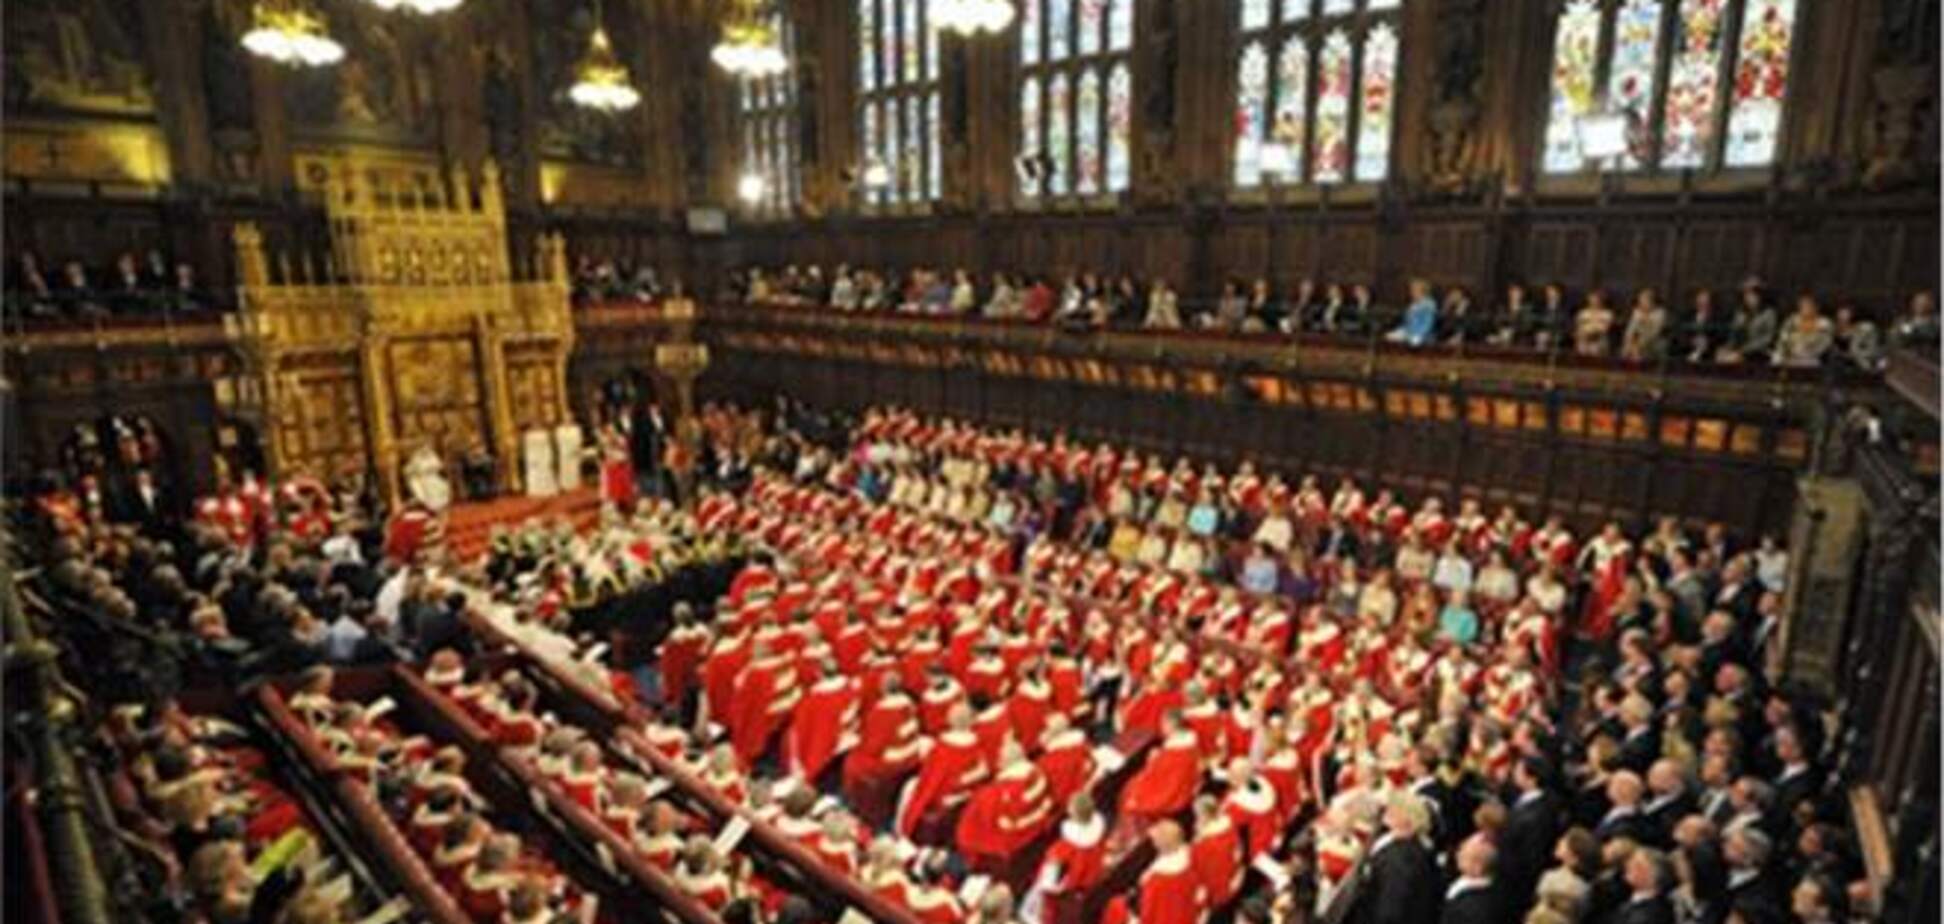 Британский парламент планируют покрыть латексом